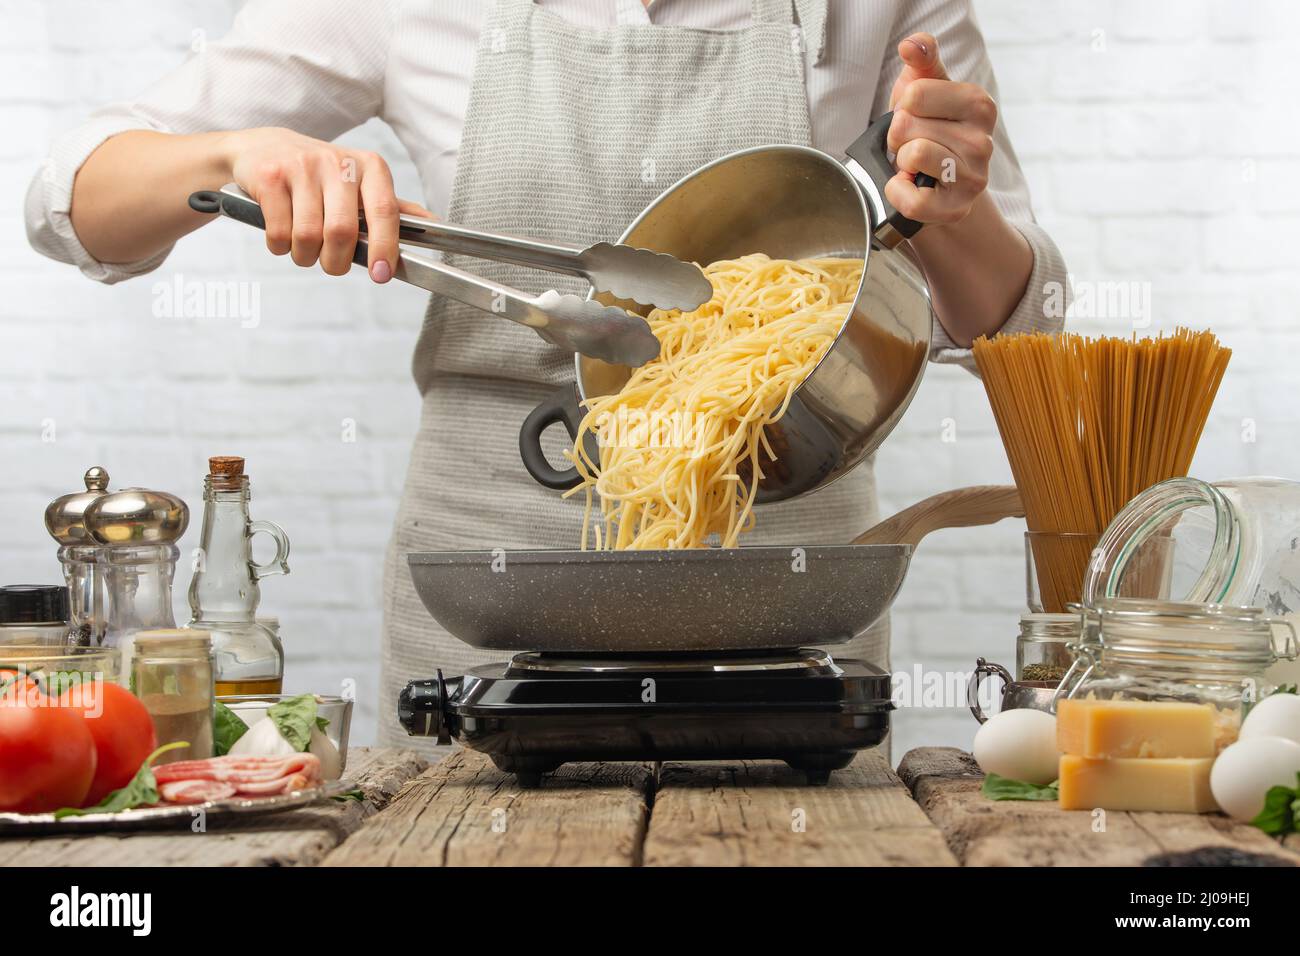 Chef dans des fours blancs uniformes spaghetti bouillis dans une poêle à frire. Arrière-plan de la cuisson des pâtes alla carbonara. Plat italien traditionnel sur fond blanc. Banque D'Images